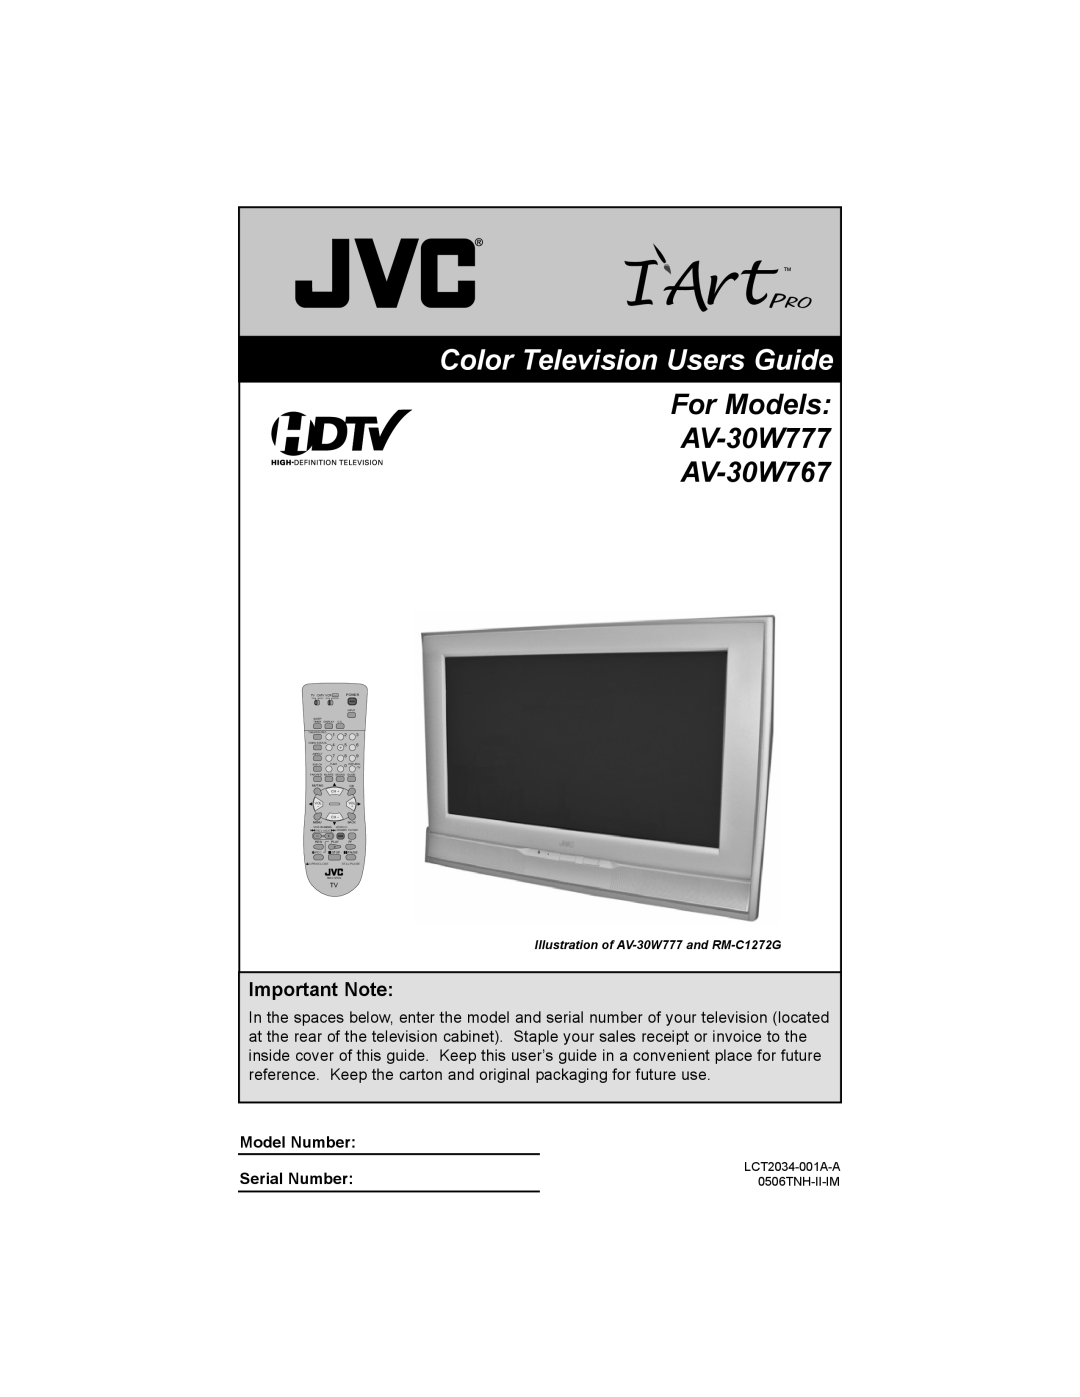 JVC AV 30W777, AV-30W777, AV-30W767 manual Important Note, Color Television Users Guide, For Models AV-30W777 AV-30W767 